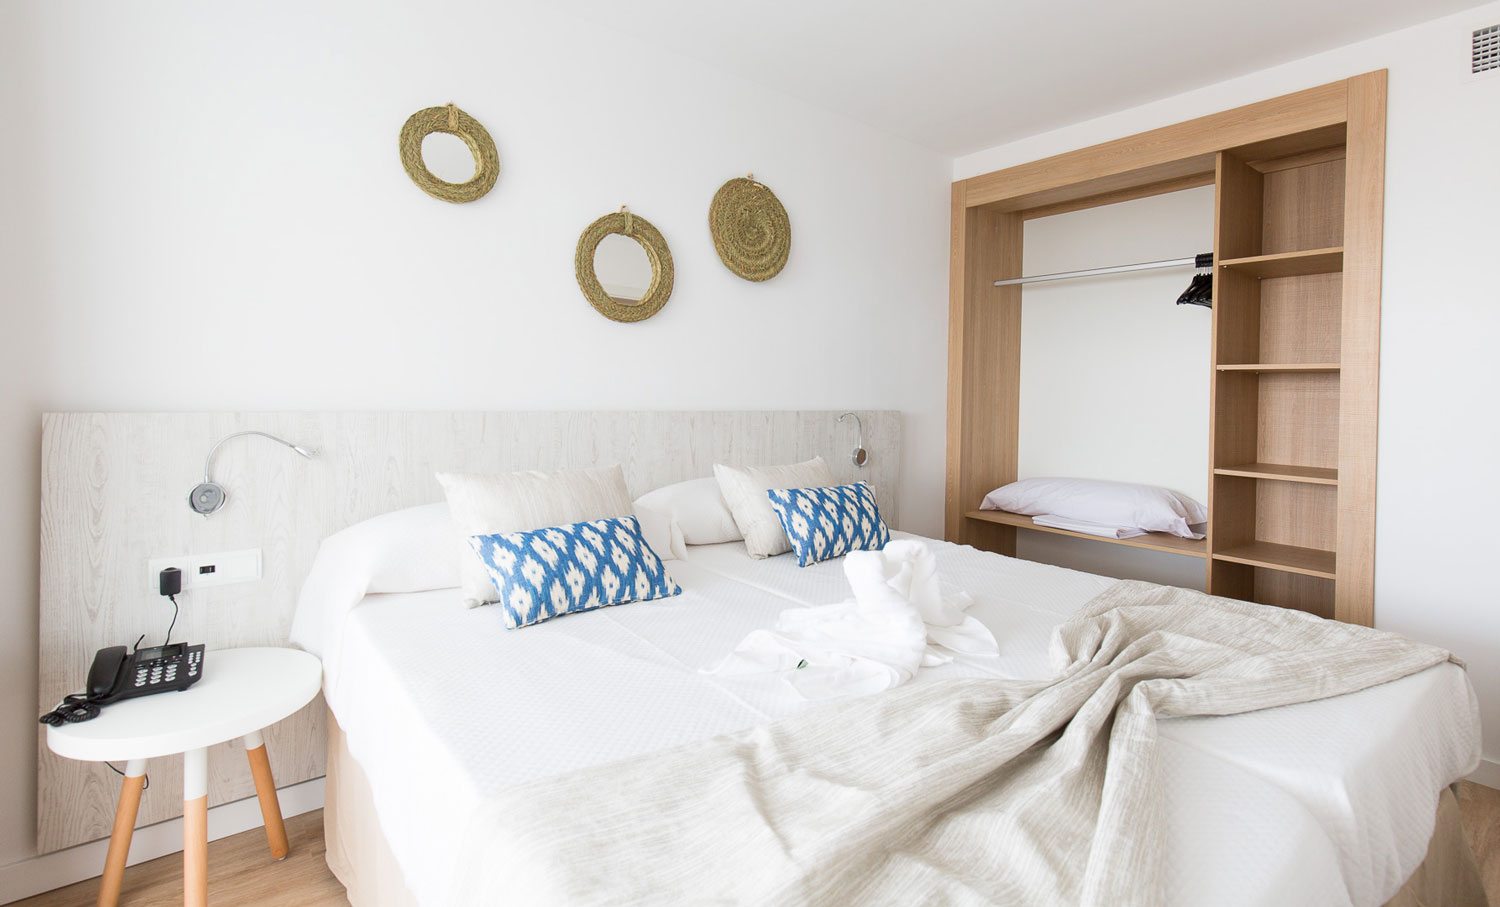 Habitación con ropa de cama blanca y cojines de tela de llengües típica mallorquina.